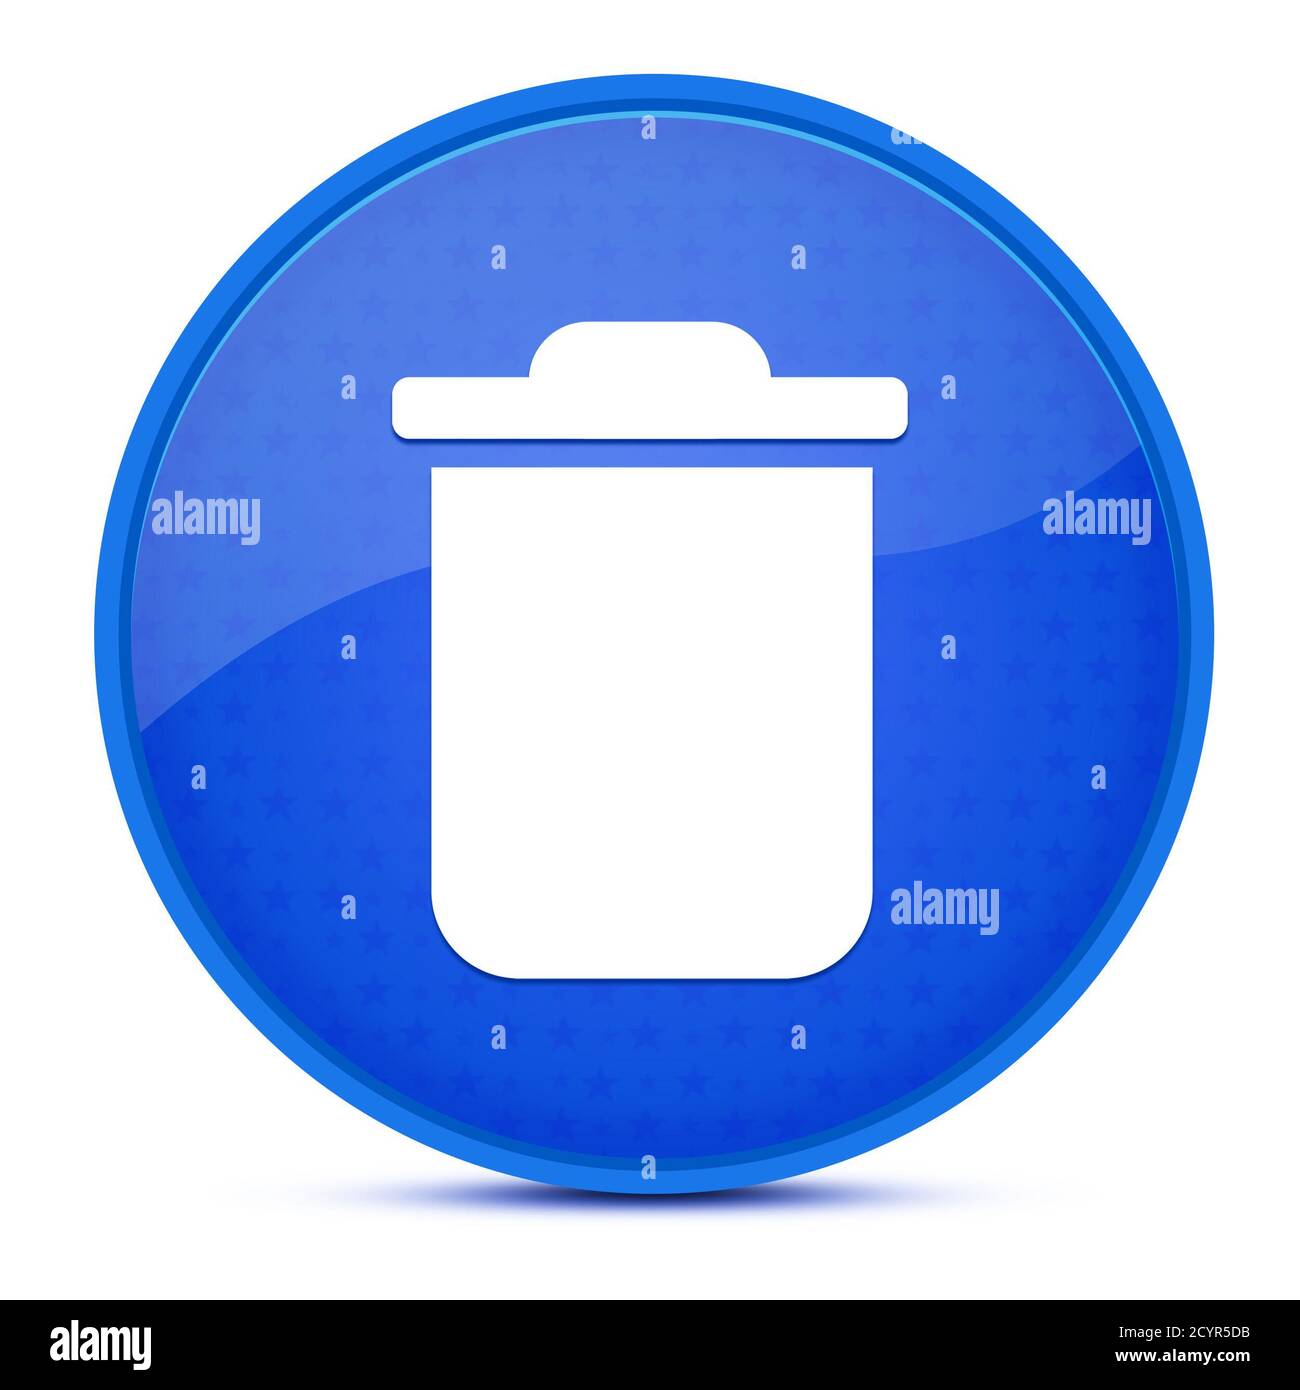 Supprimer l'illustration abstraite du bouton rond bleu brillant esthétique Banque D'Images